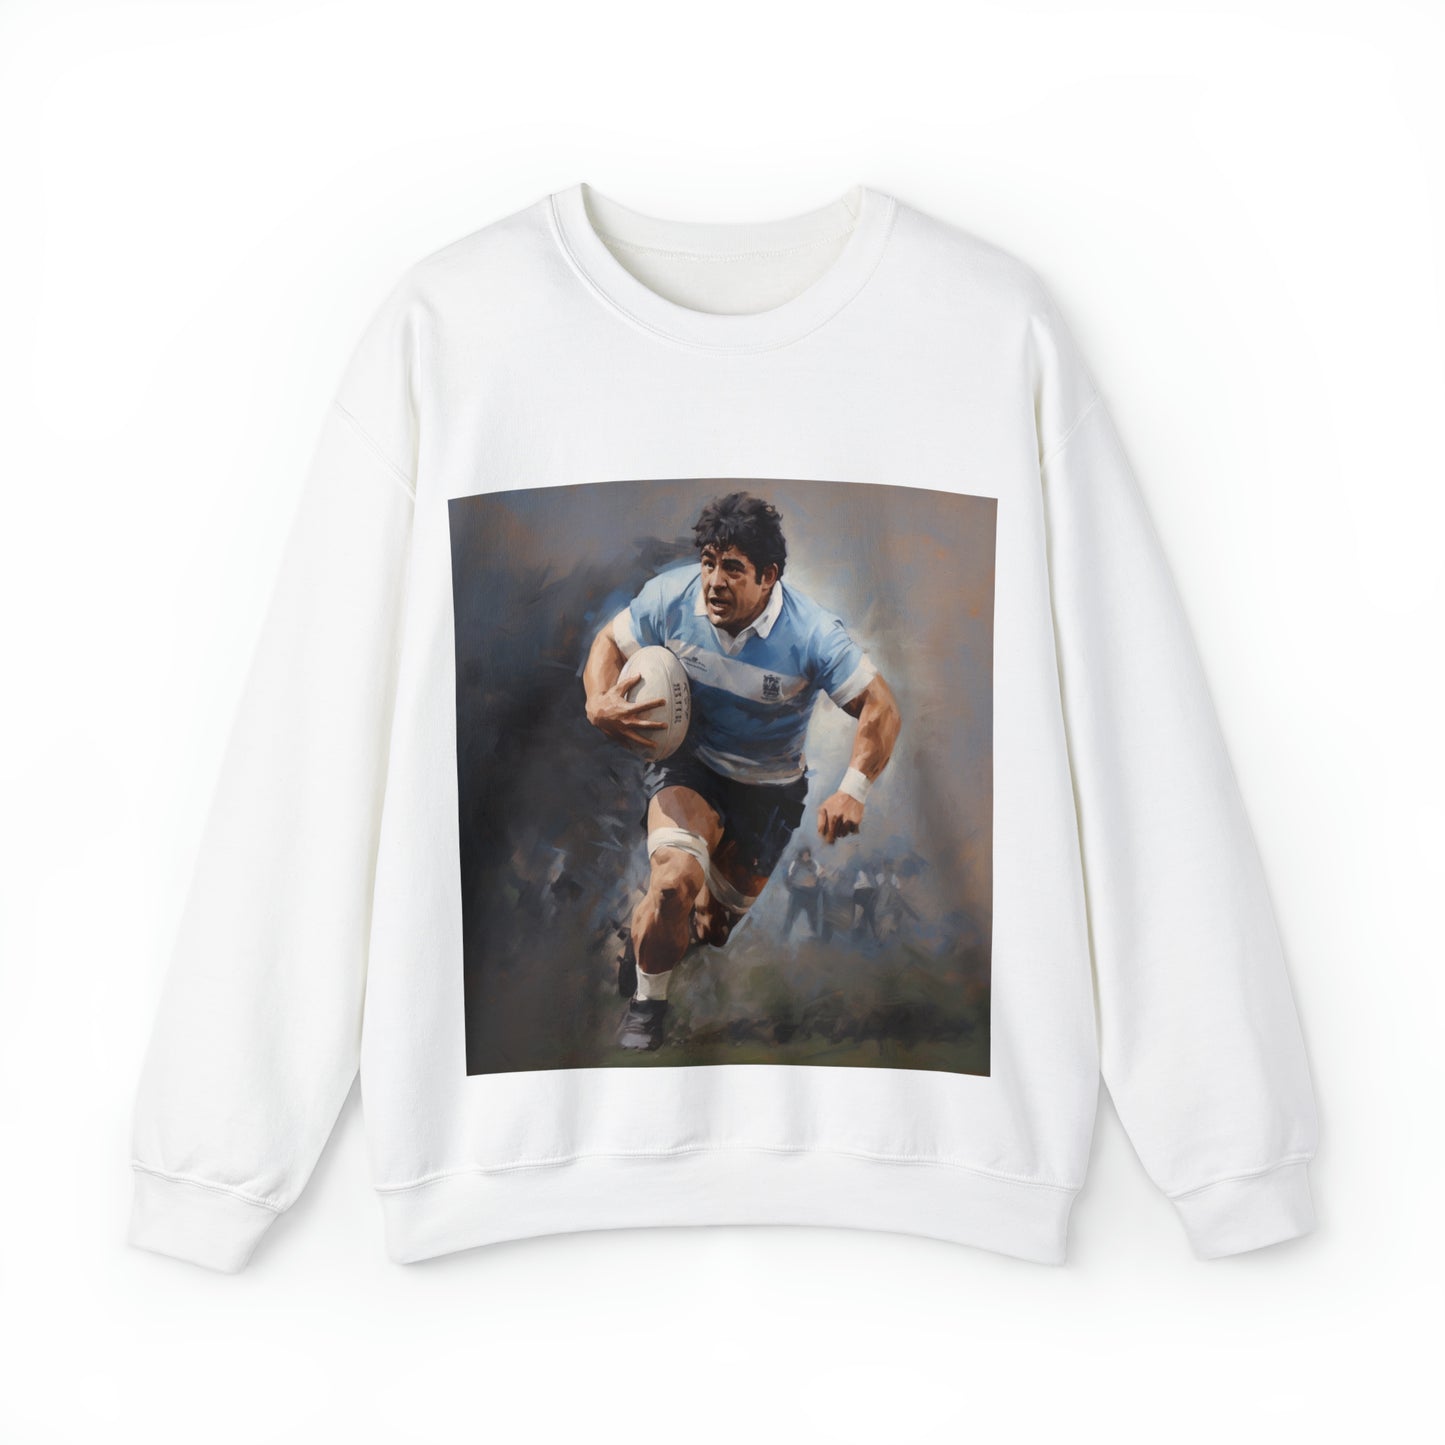 Rugby Maradona - light sweatshirts